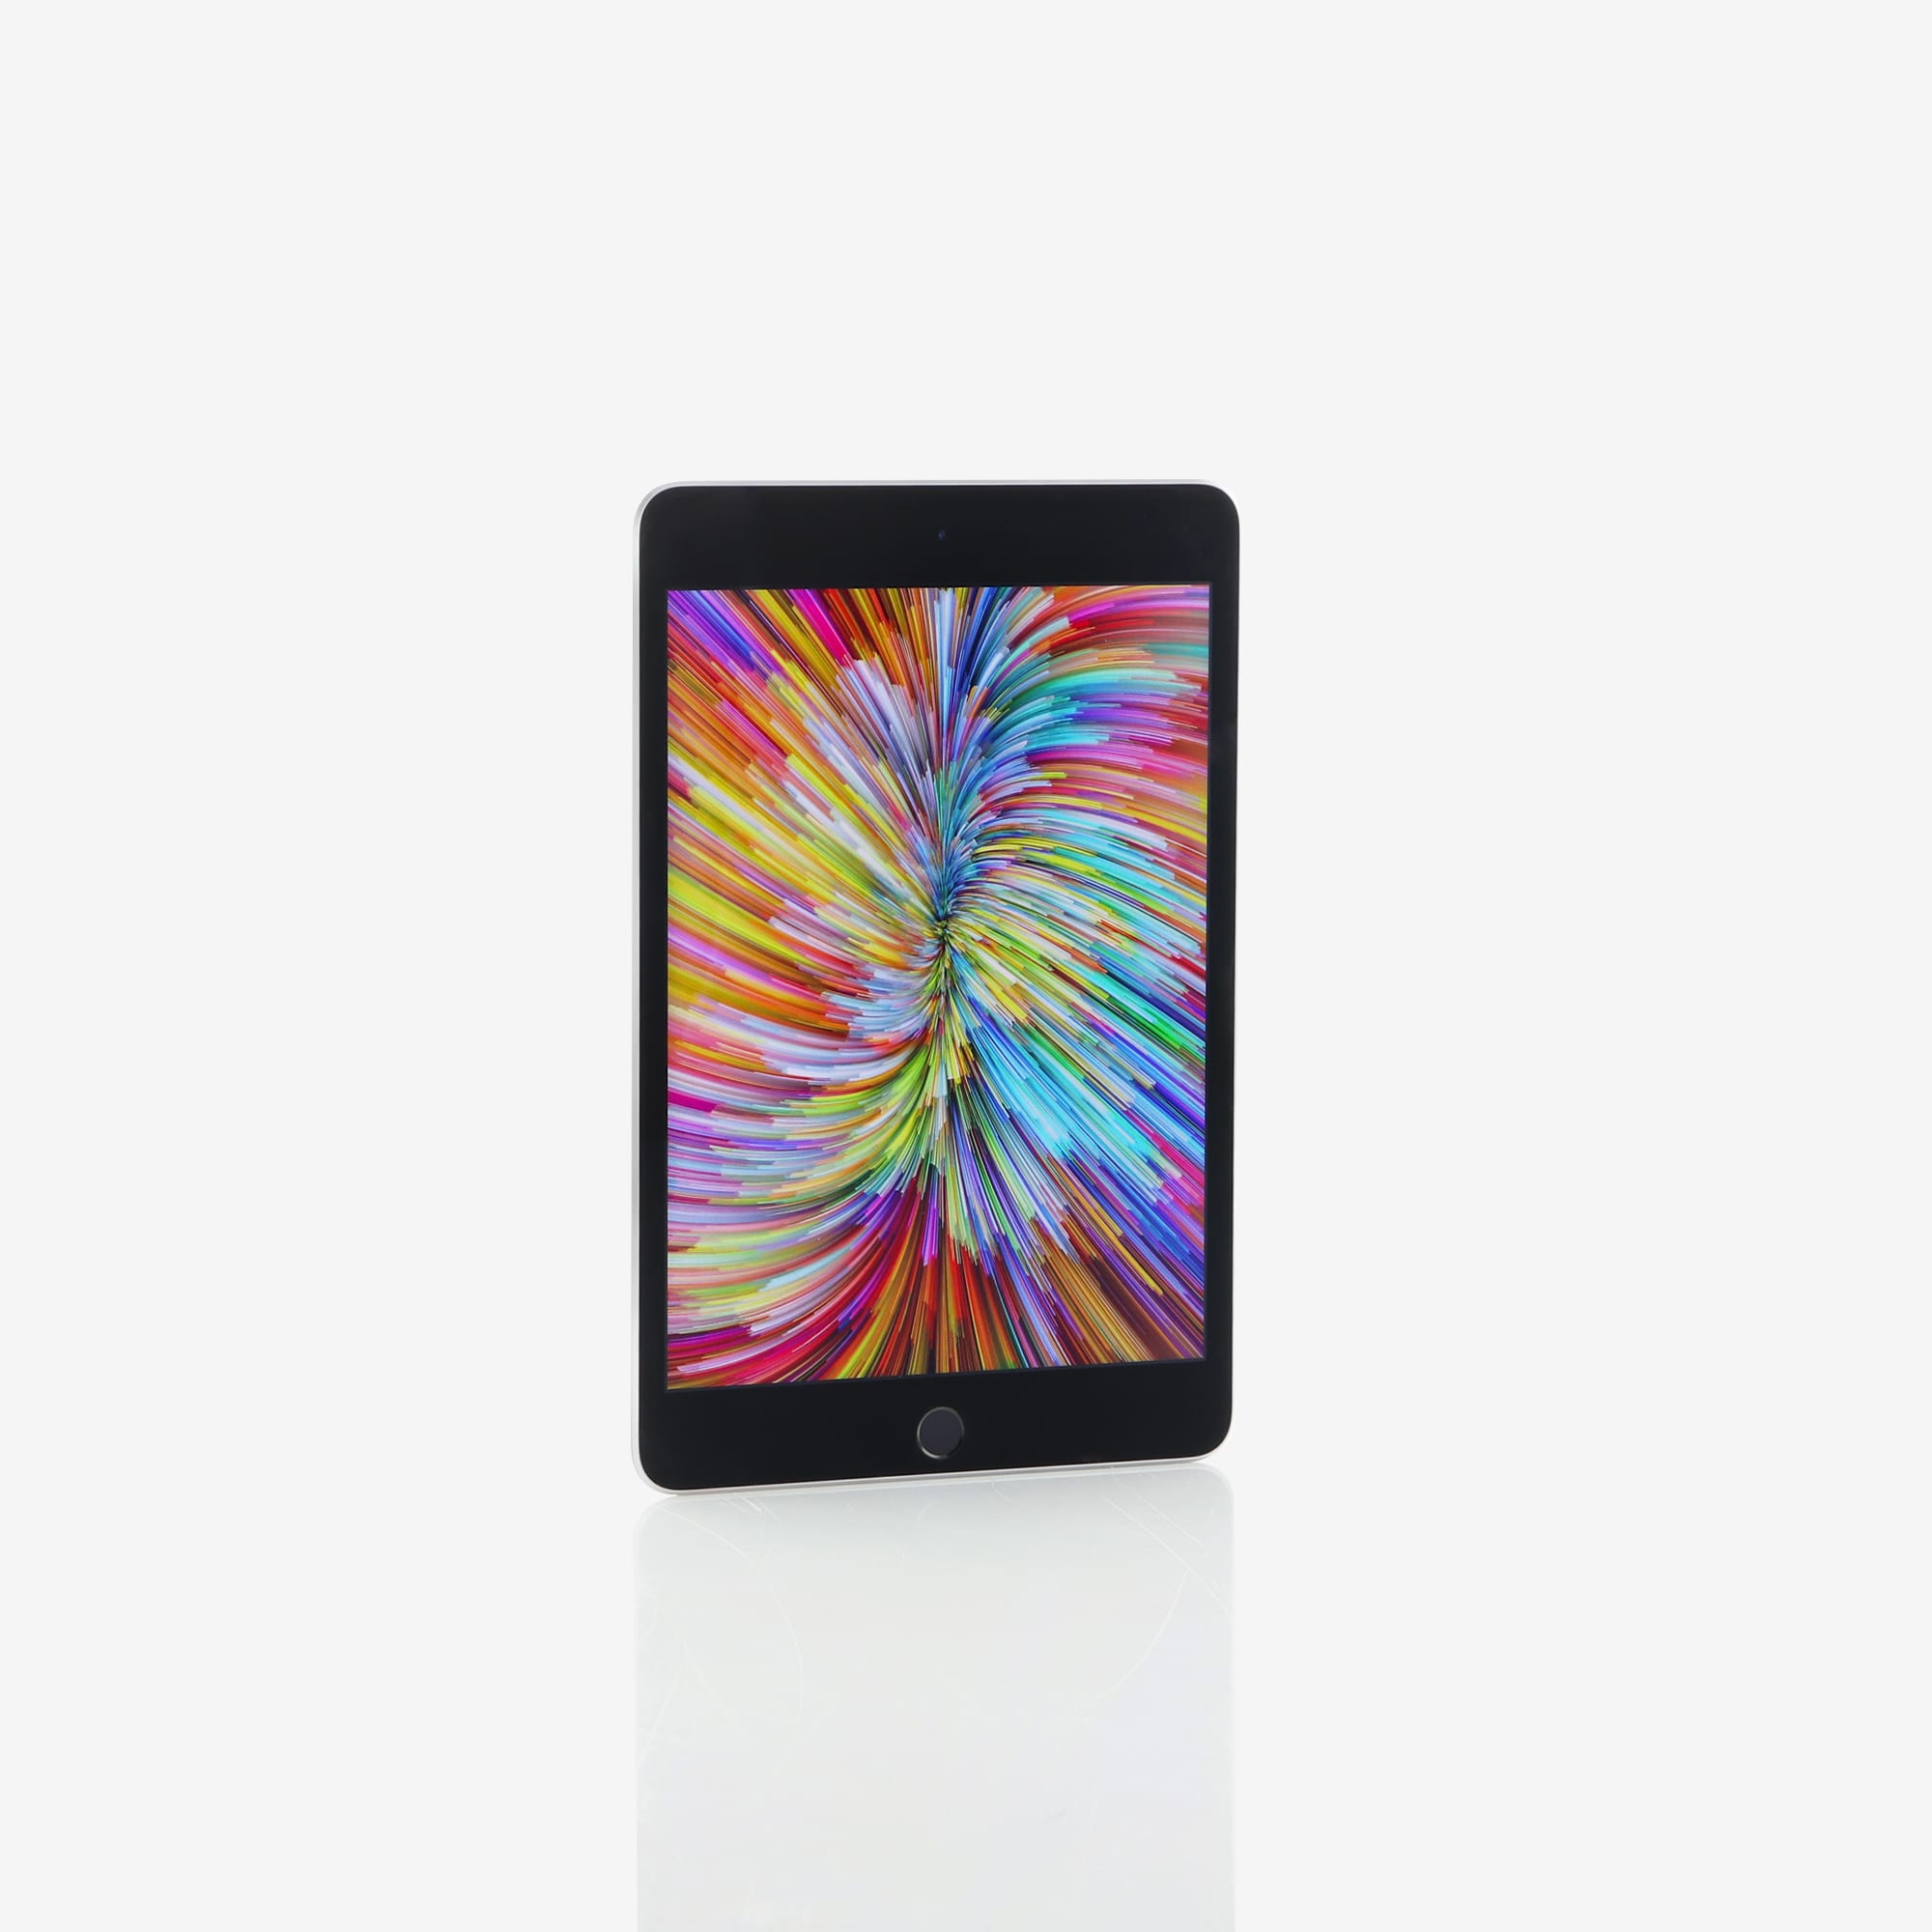 1 x iPad mini 4 (Wi-Fi) Space Grey (2015)